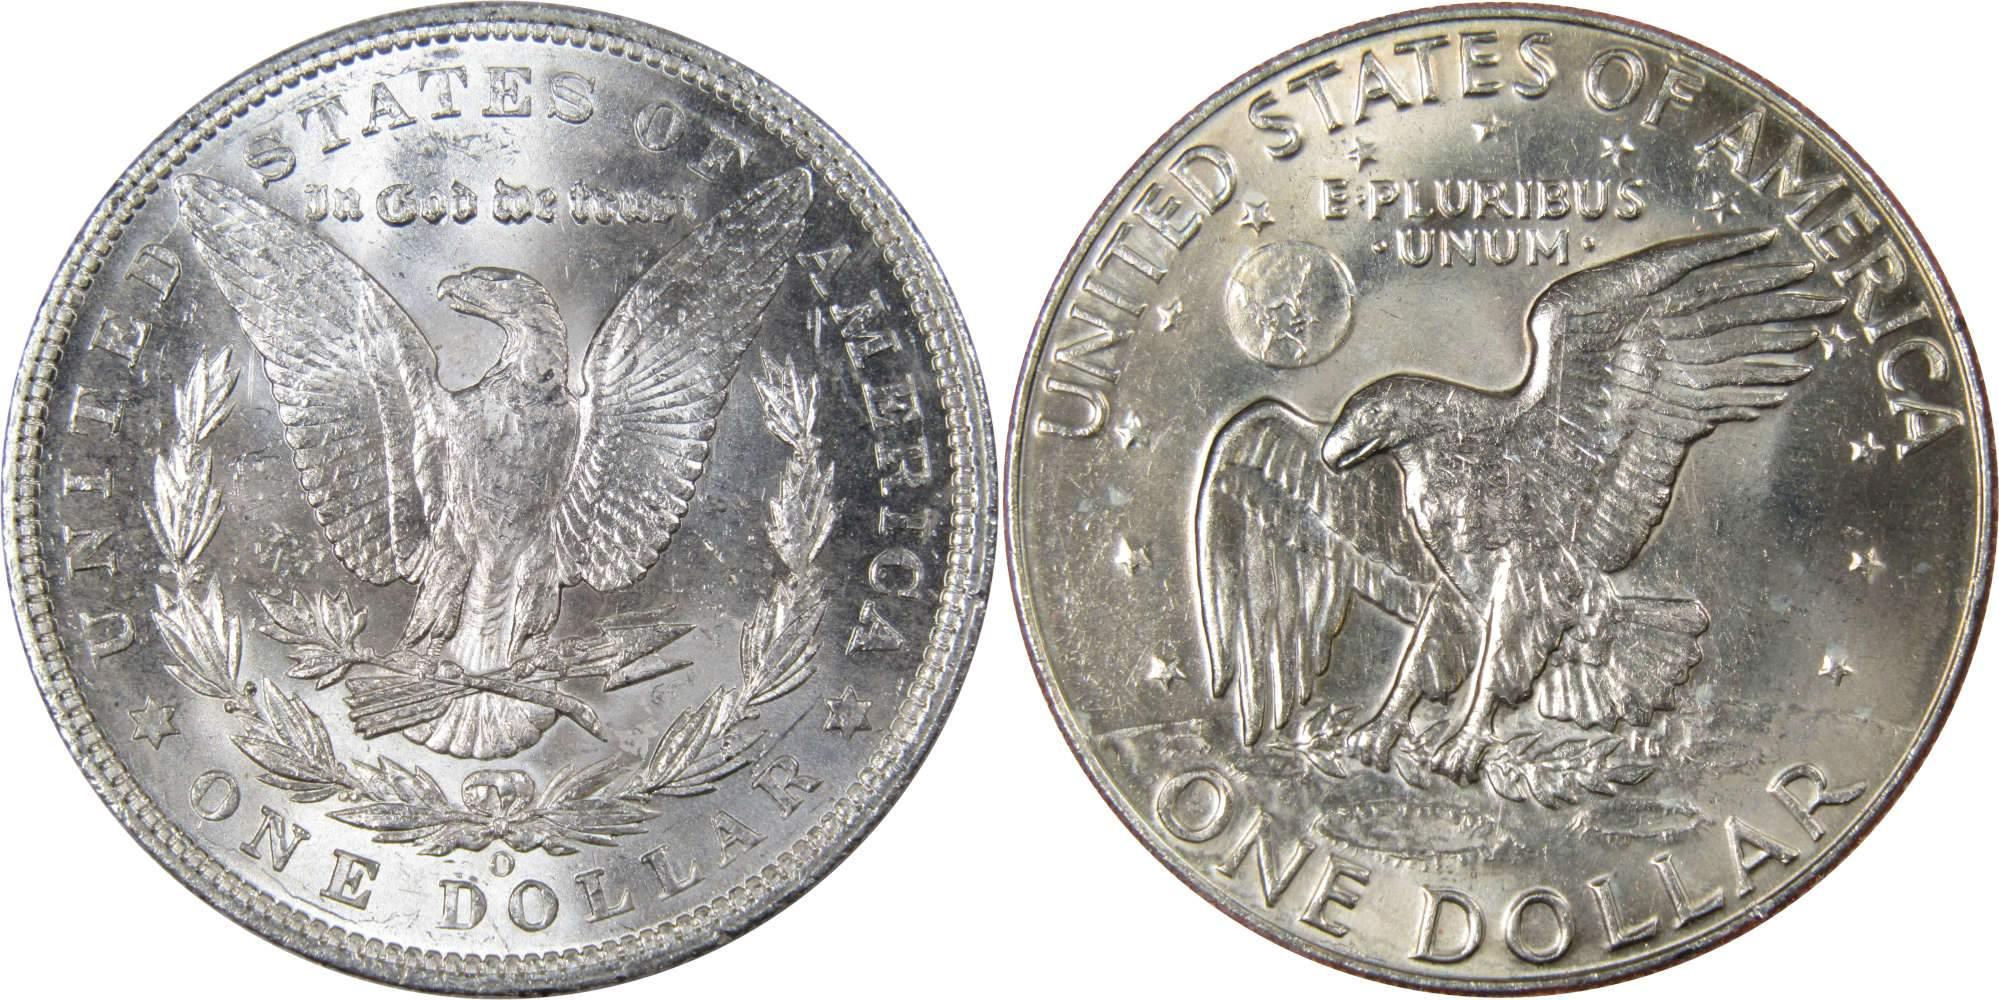 1904 O Morgan Dollar BU Uncirculated 90% Silver with 1978 D IKE$ BU Uncirculated - Morgan coin - Morgan silver dollar - Morgan silver dollar for sale - Profile Coins &amp; Collectibles